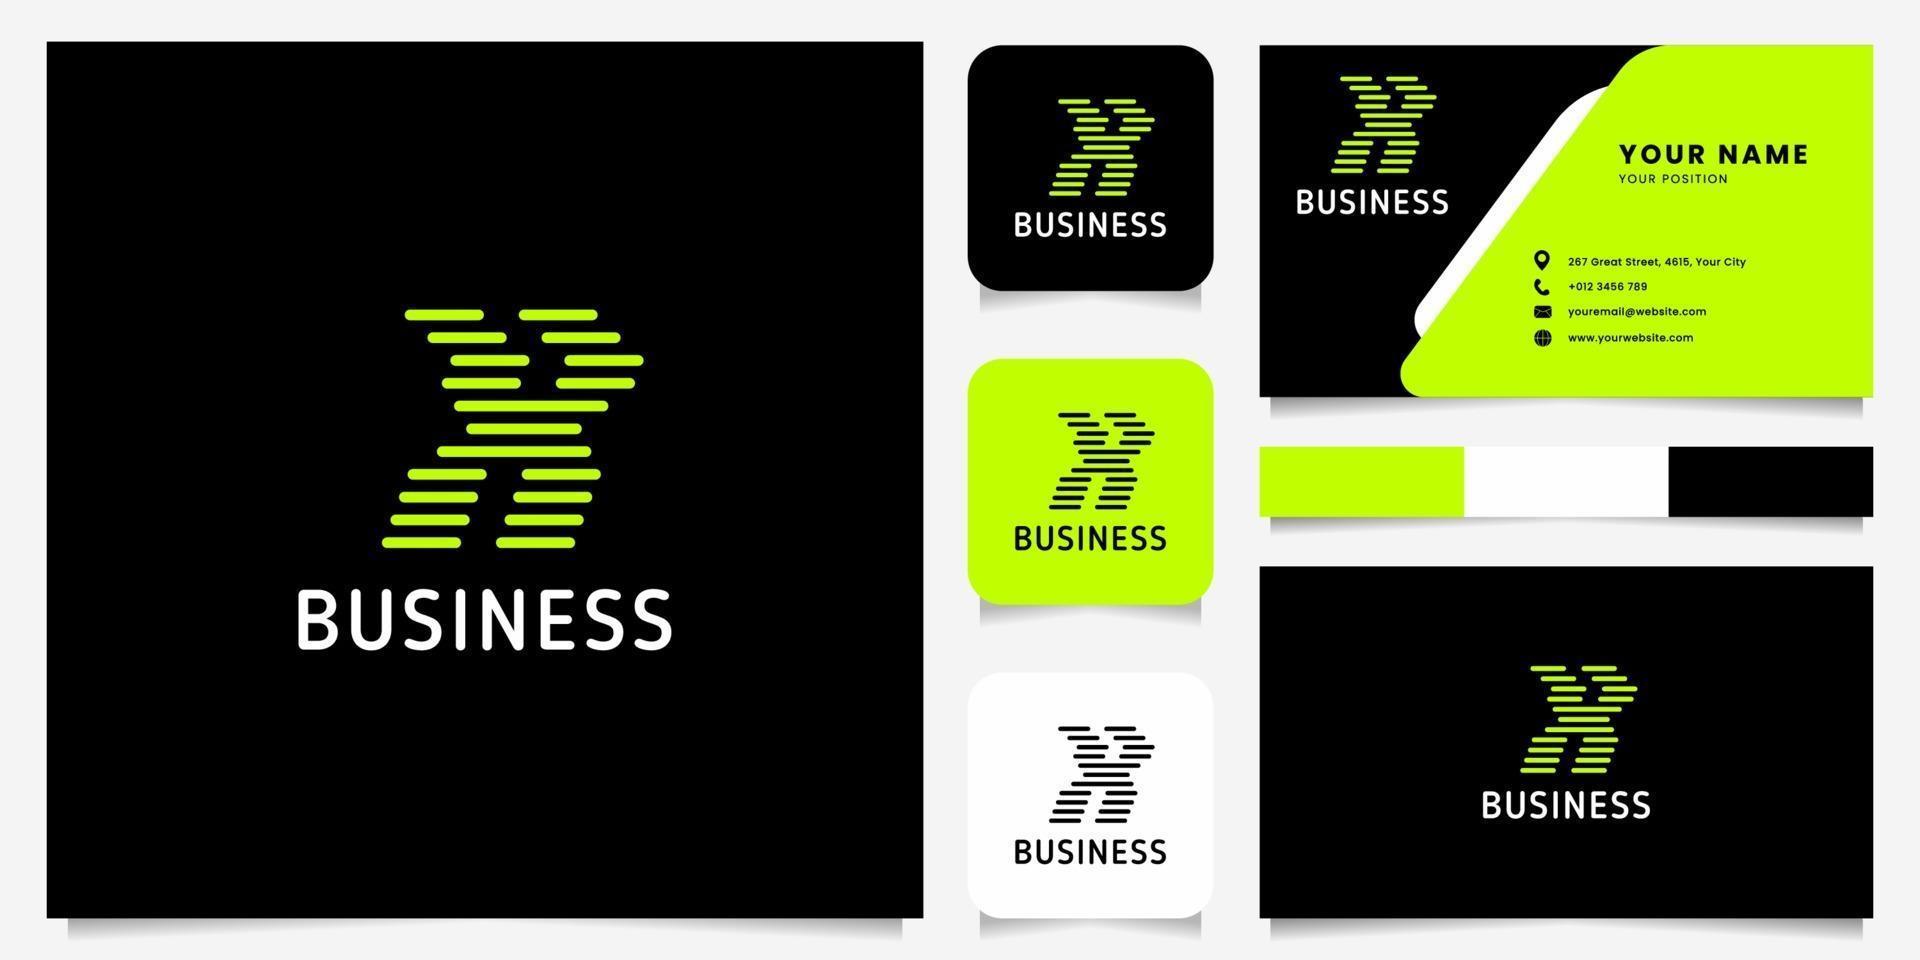 ljusgrön pil avrundade linjer bokstaven x logotyp i svart bakgrund med visitkortsmall vektor